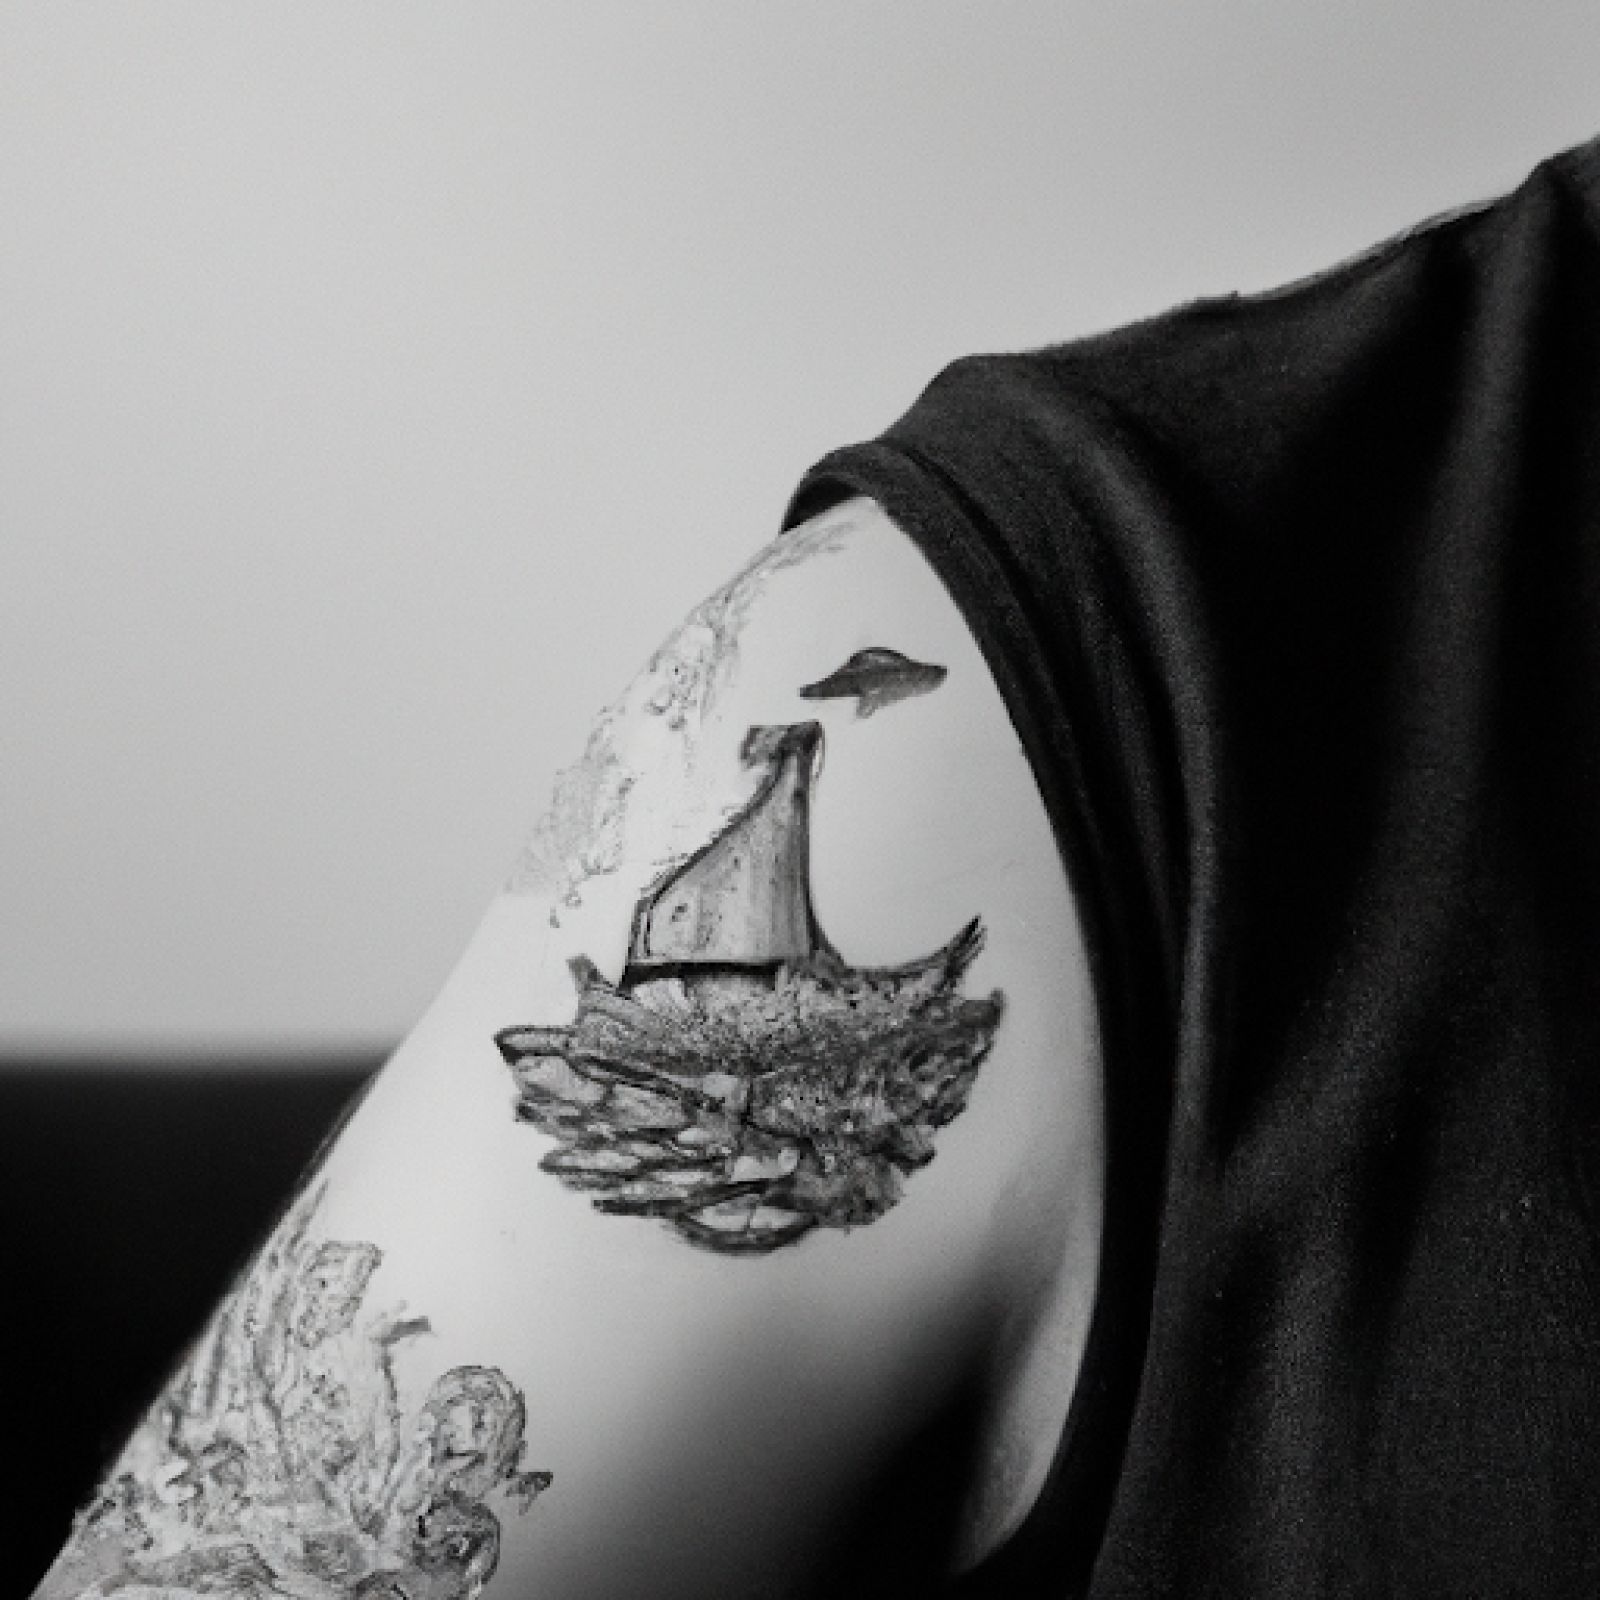 Ship tattoo on shoulder for men